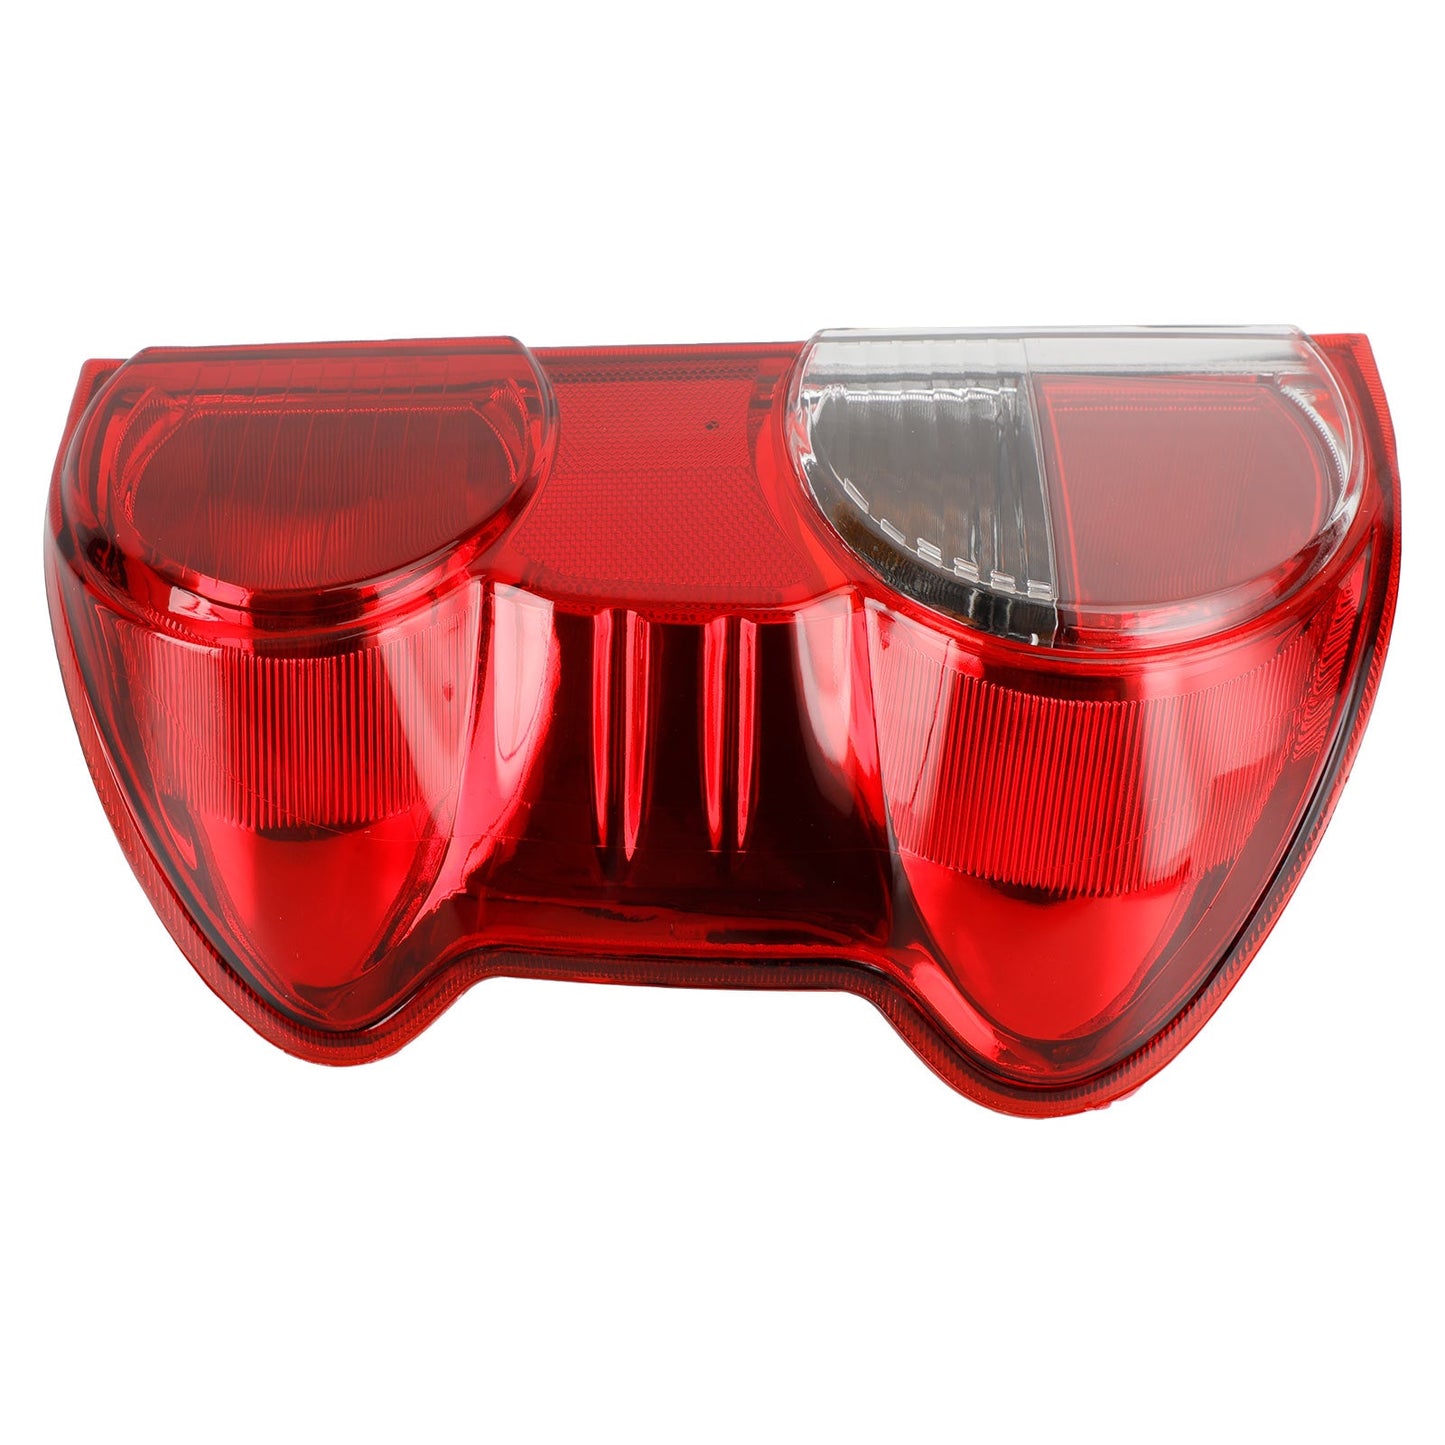 2013-2018 Nissan NV200 gauche + droite feu arrière feu arrière clair lentille rouge